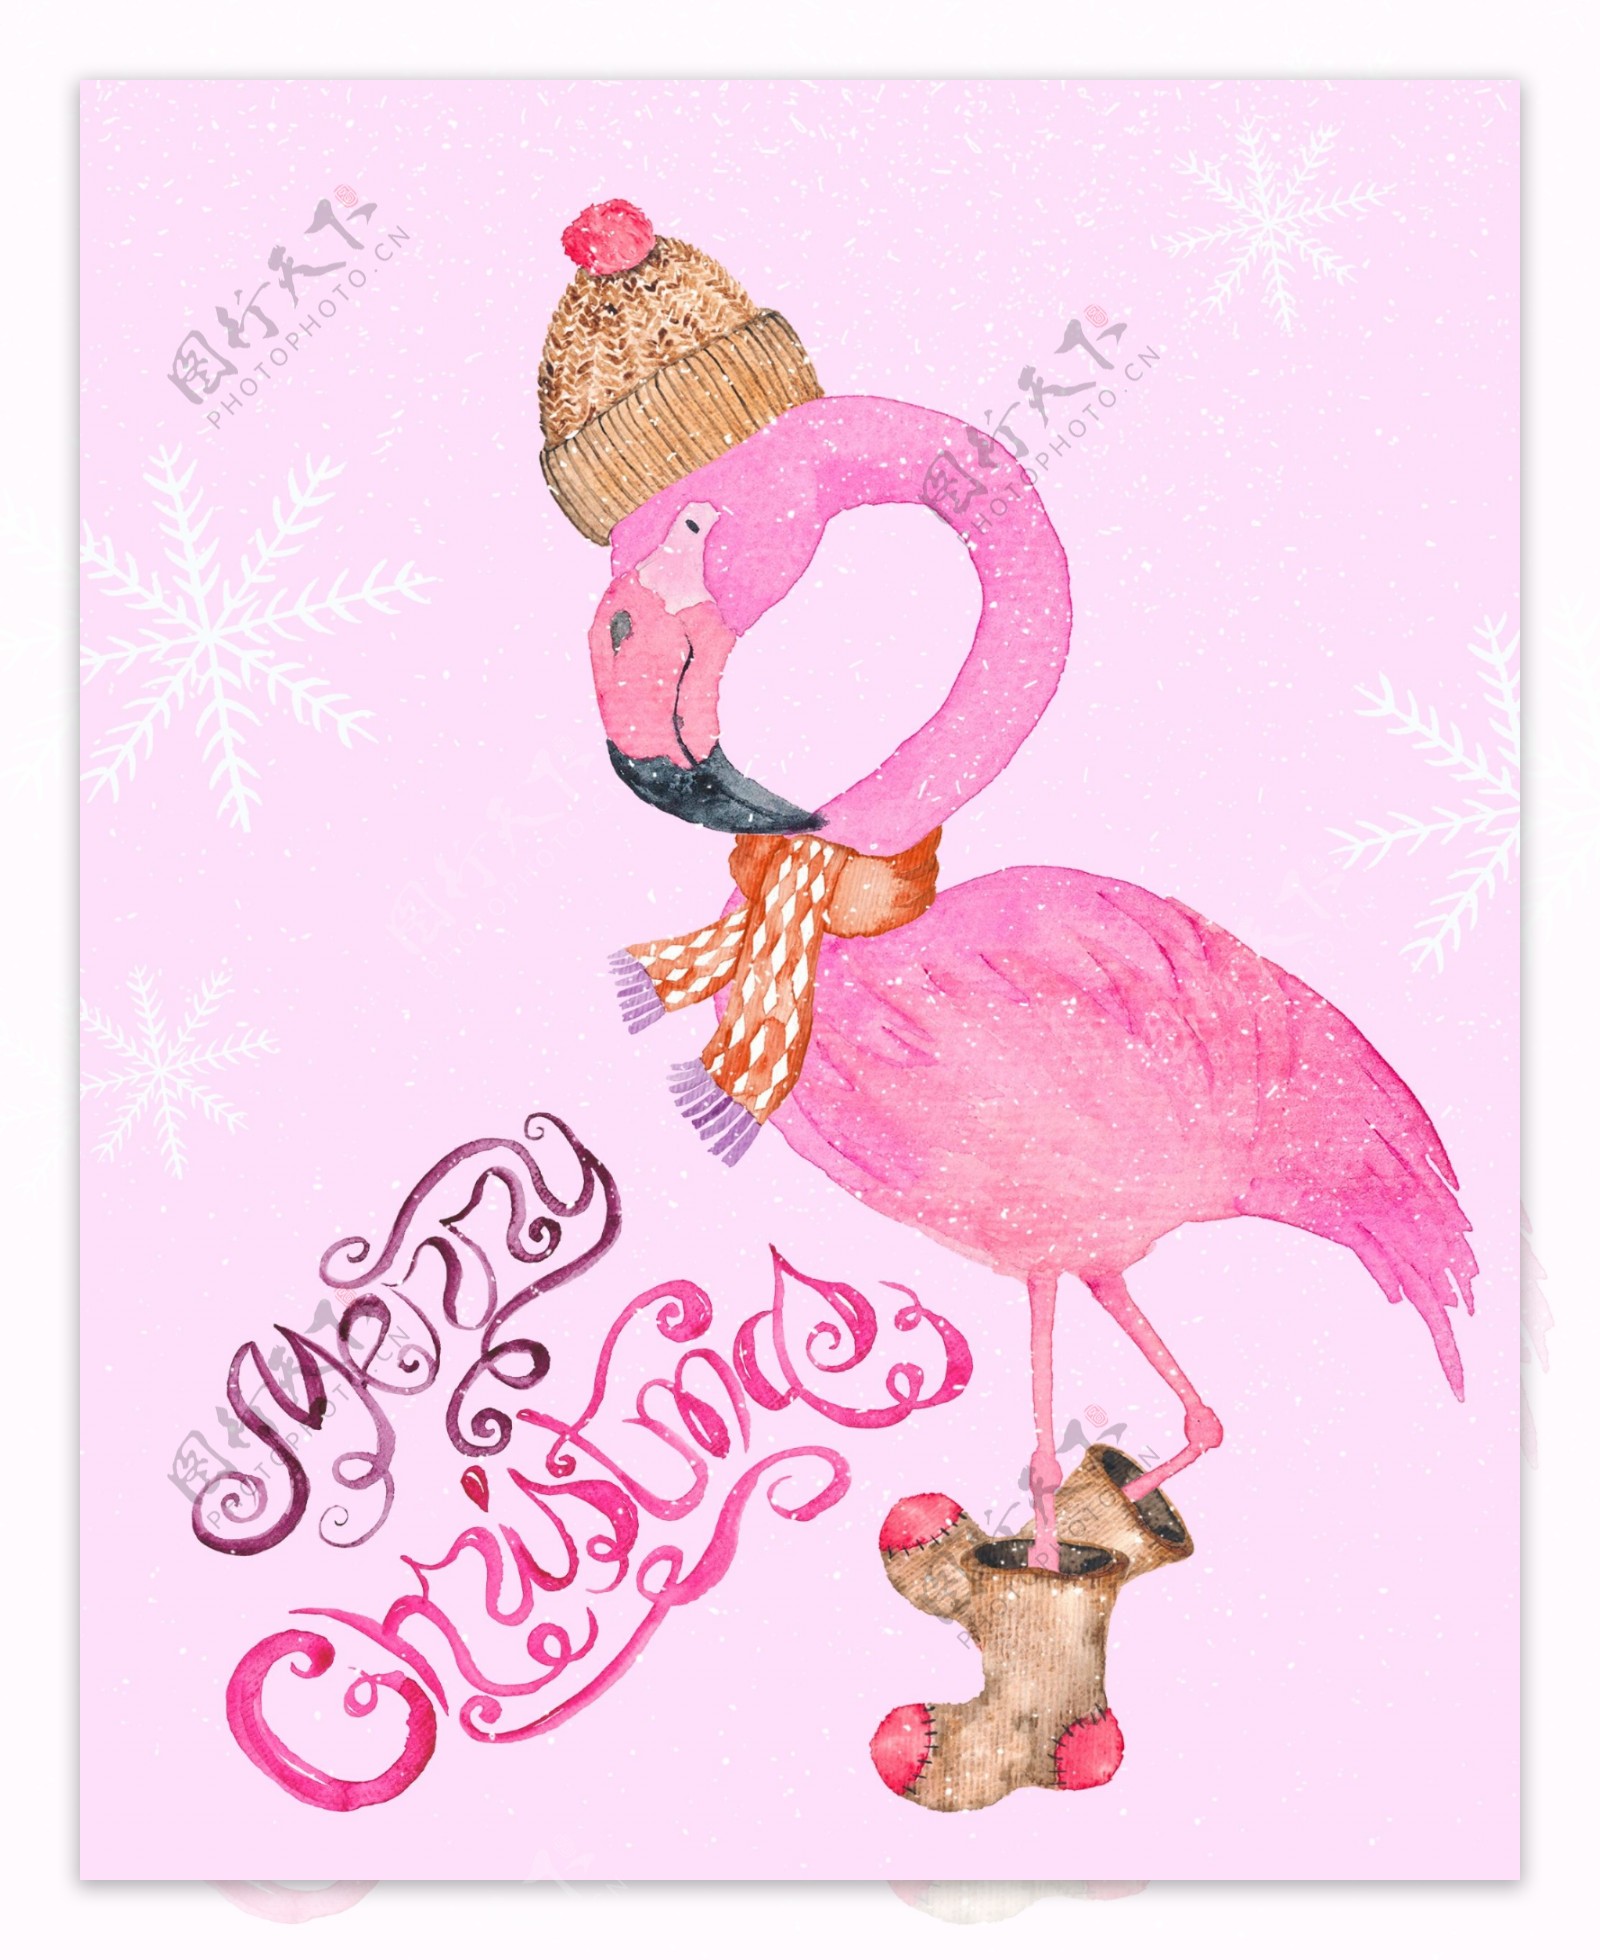 粉色火烈鸟卡通圣诞节背景素材